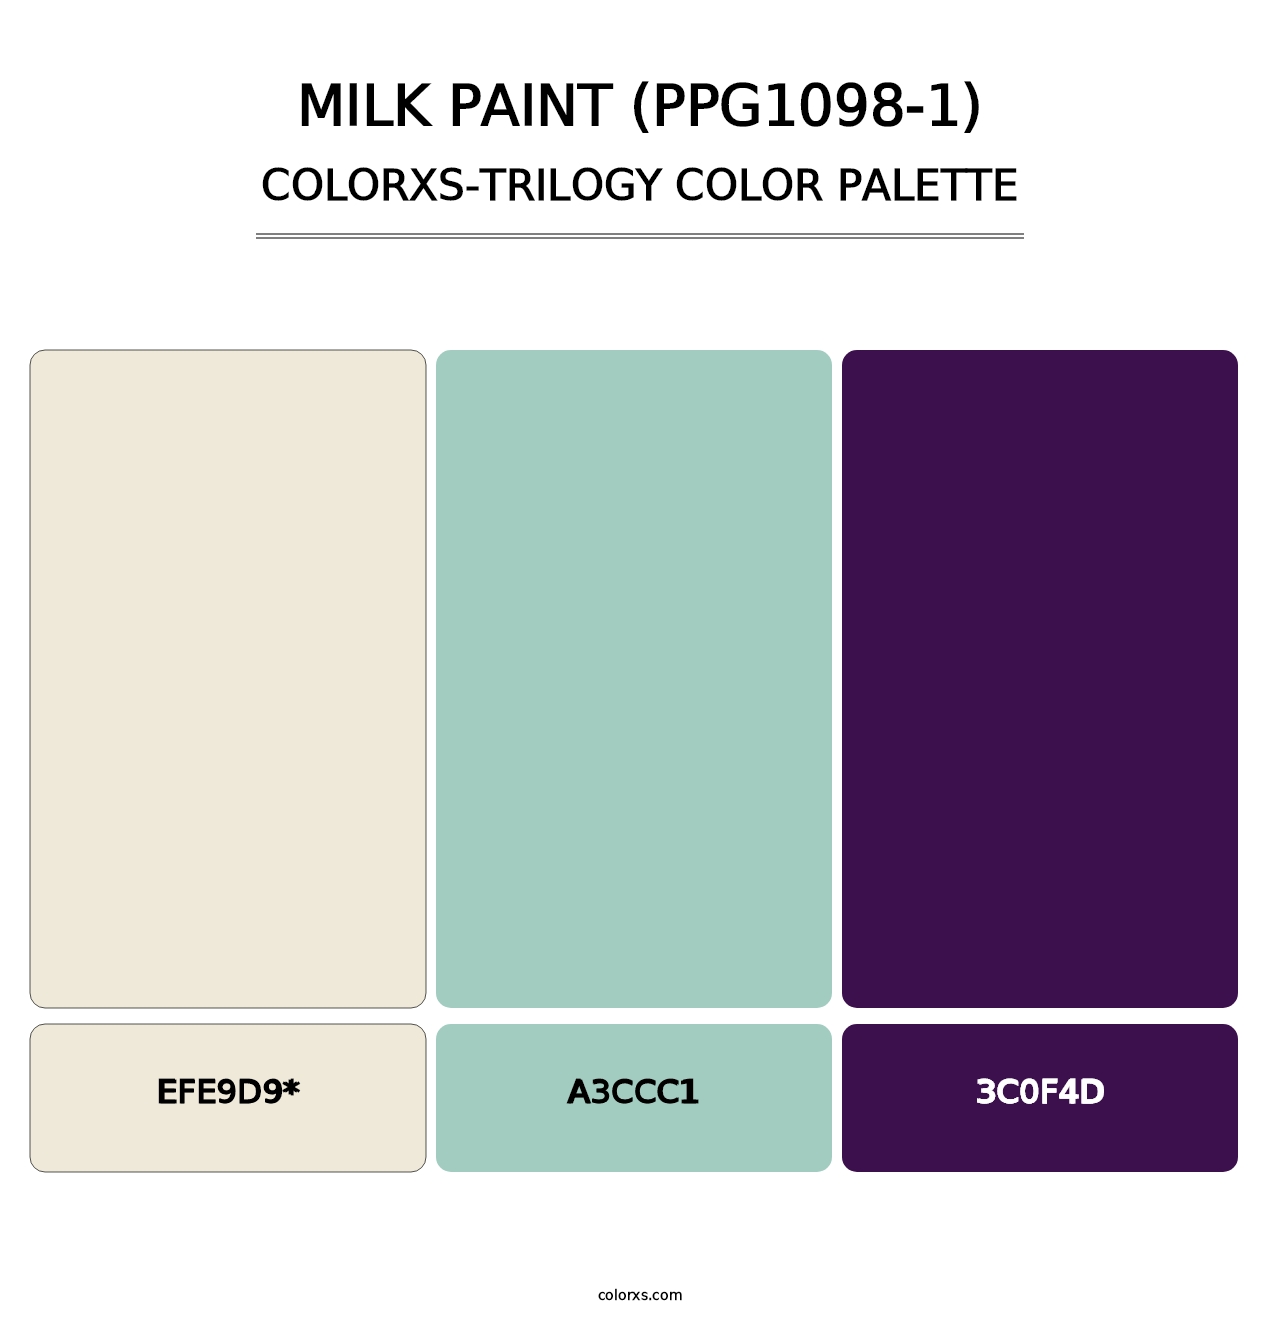 Milk Paint (PPG1098-1) - Colorxs Trilogy Palette